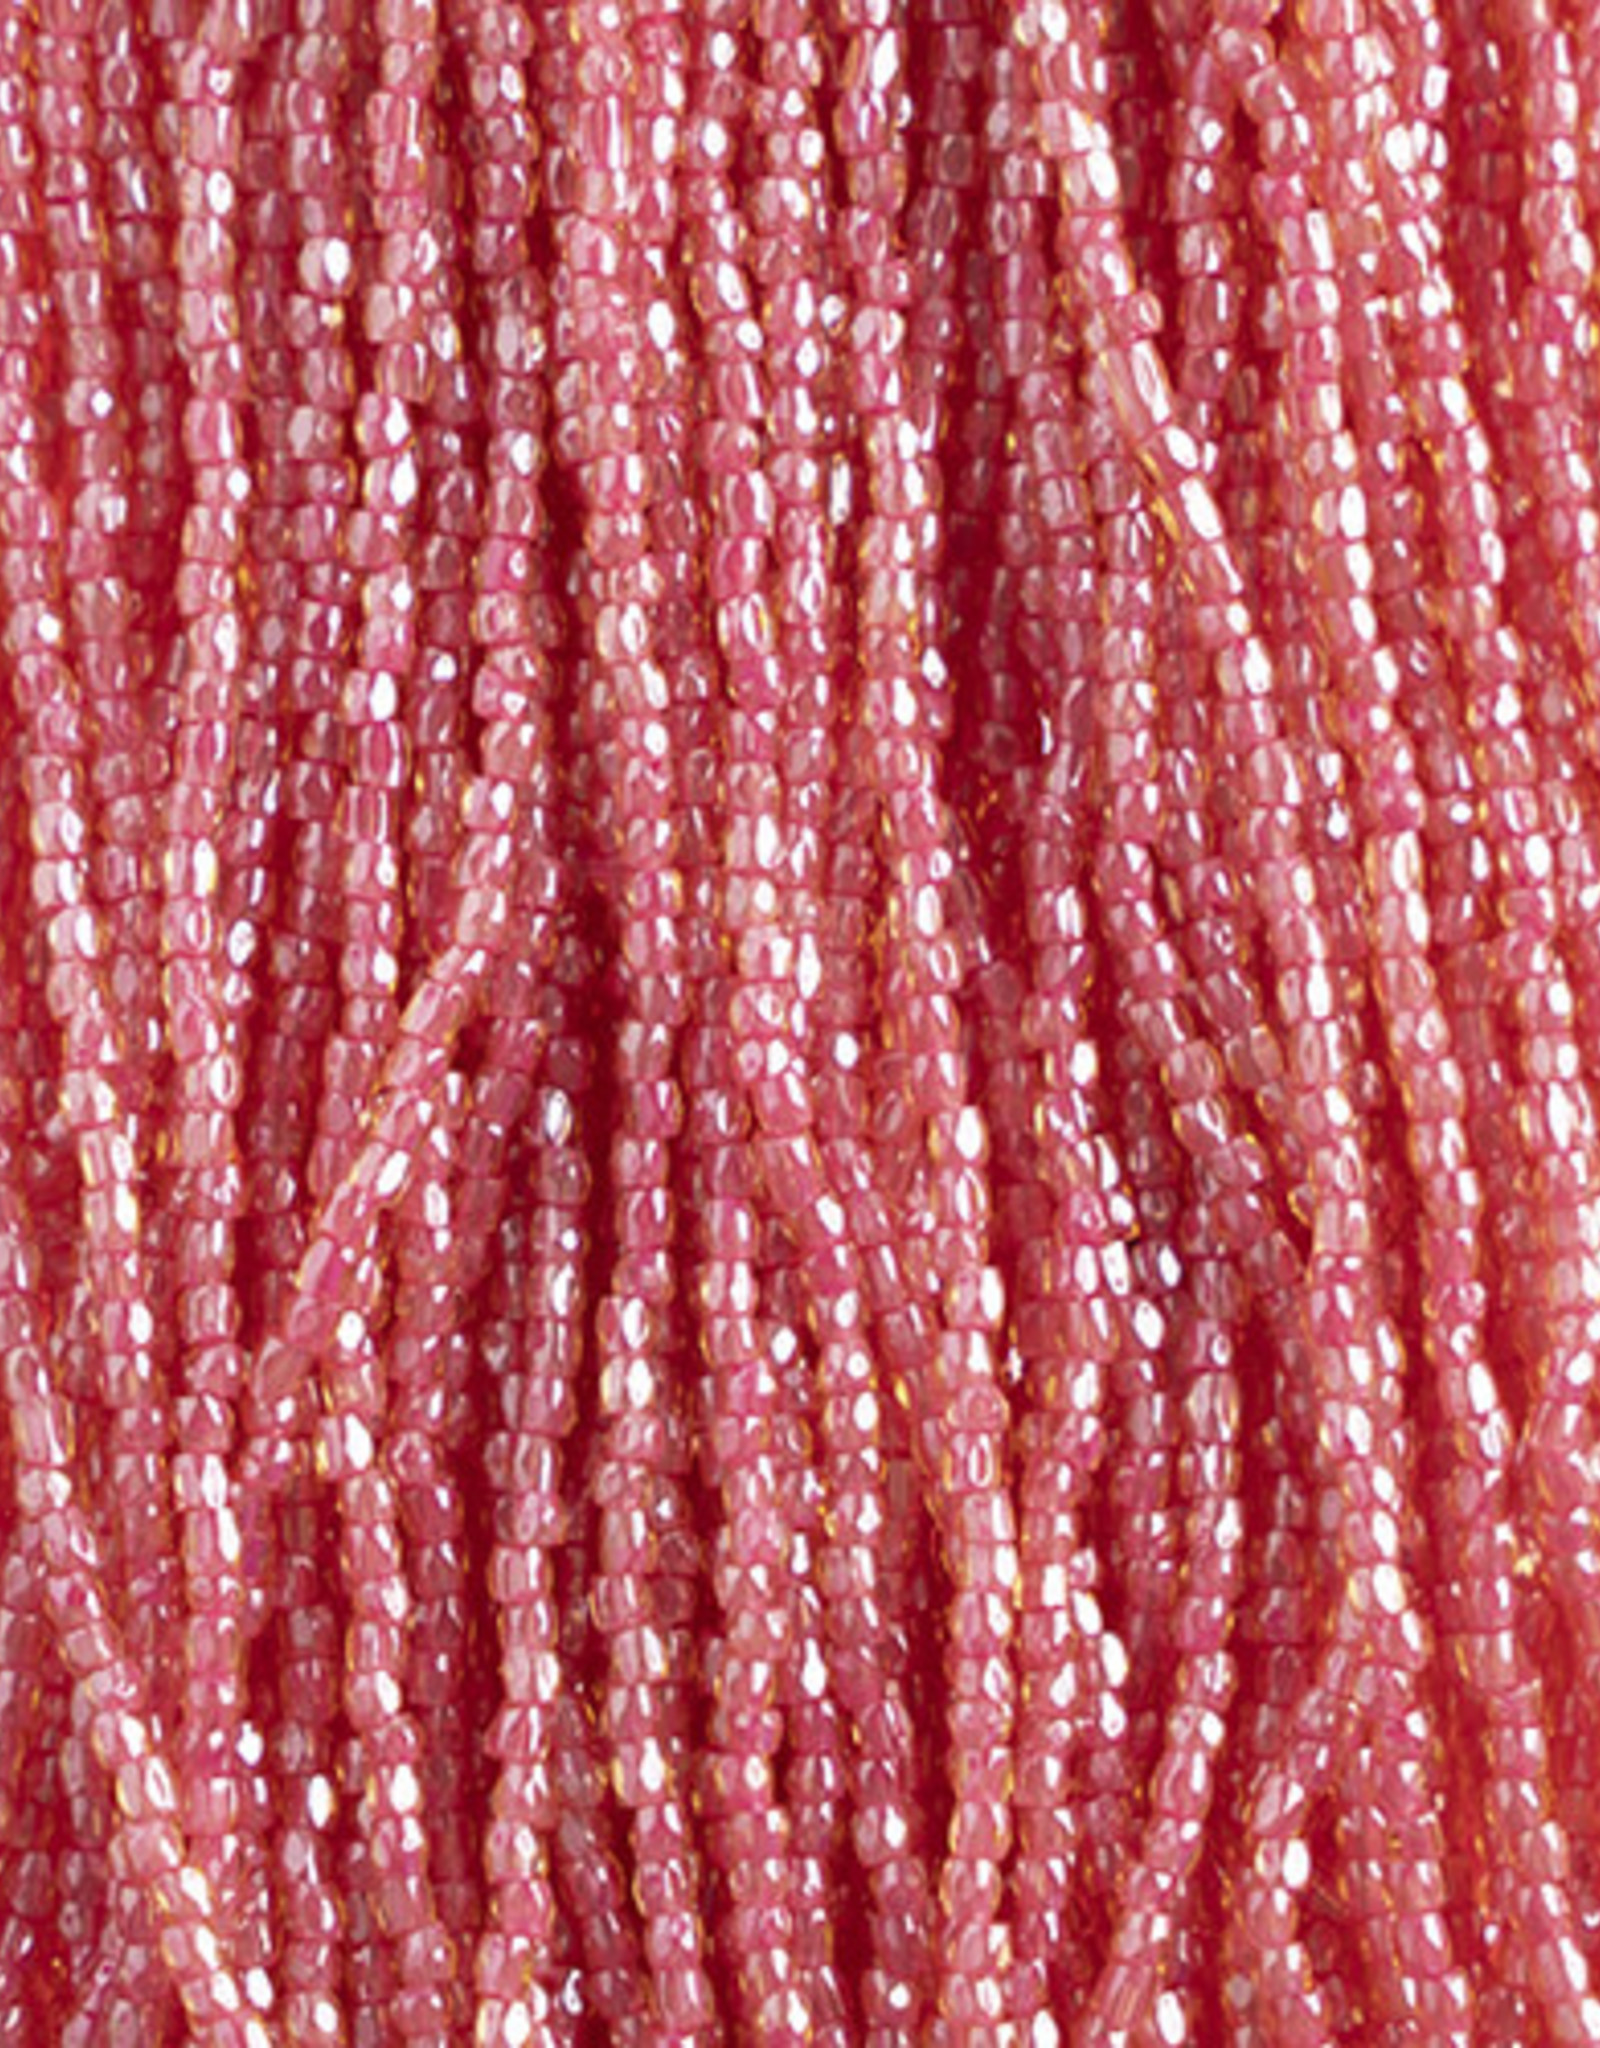 Czech Seed Bead 3Cut 10/0 Transparent Topaz/ Pink Lined Strung 2311